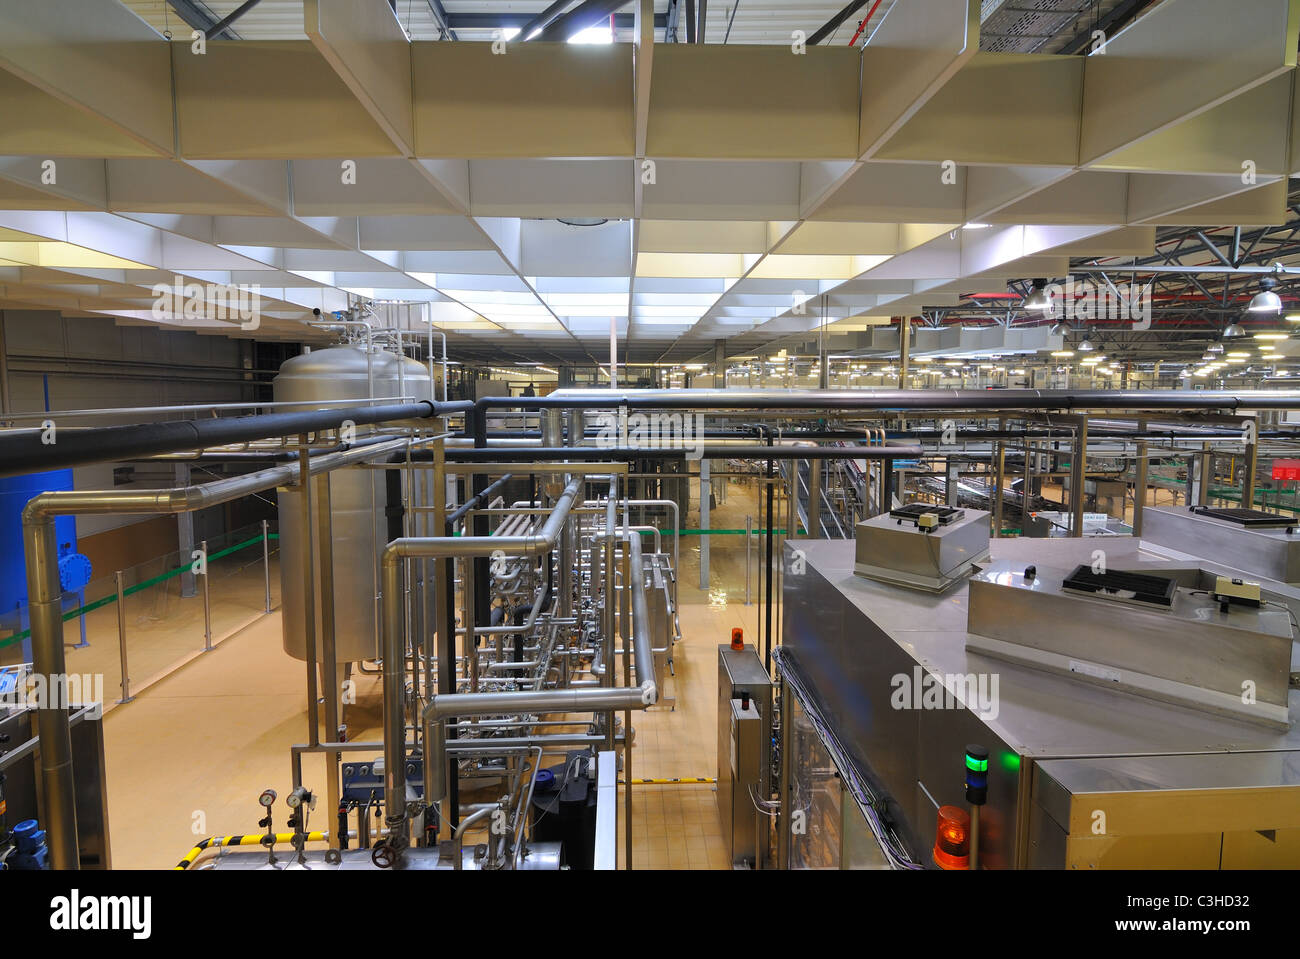 Intérieur de l'usine d'embouteillage de la bière Pilsner Urquell à Pilsen, République tchèque. Pilsner Urquell est une marque célèbre dans le monde entier. Banque D'Images